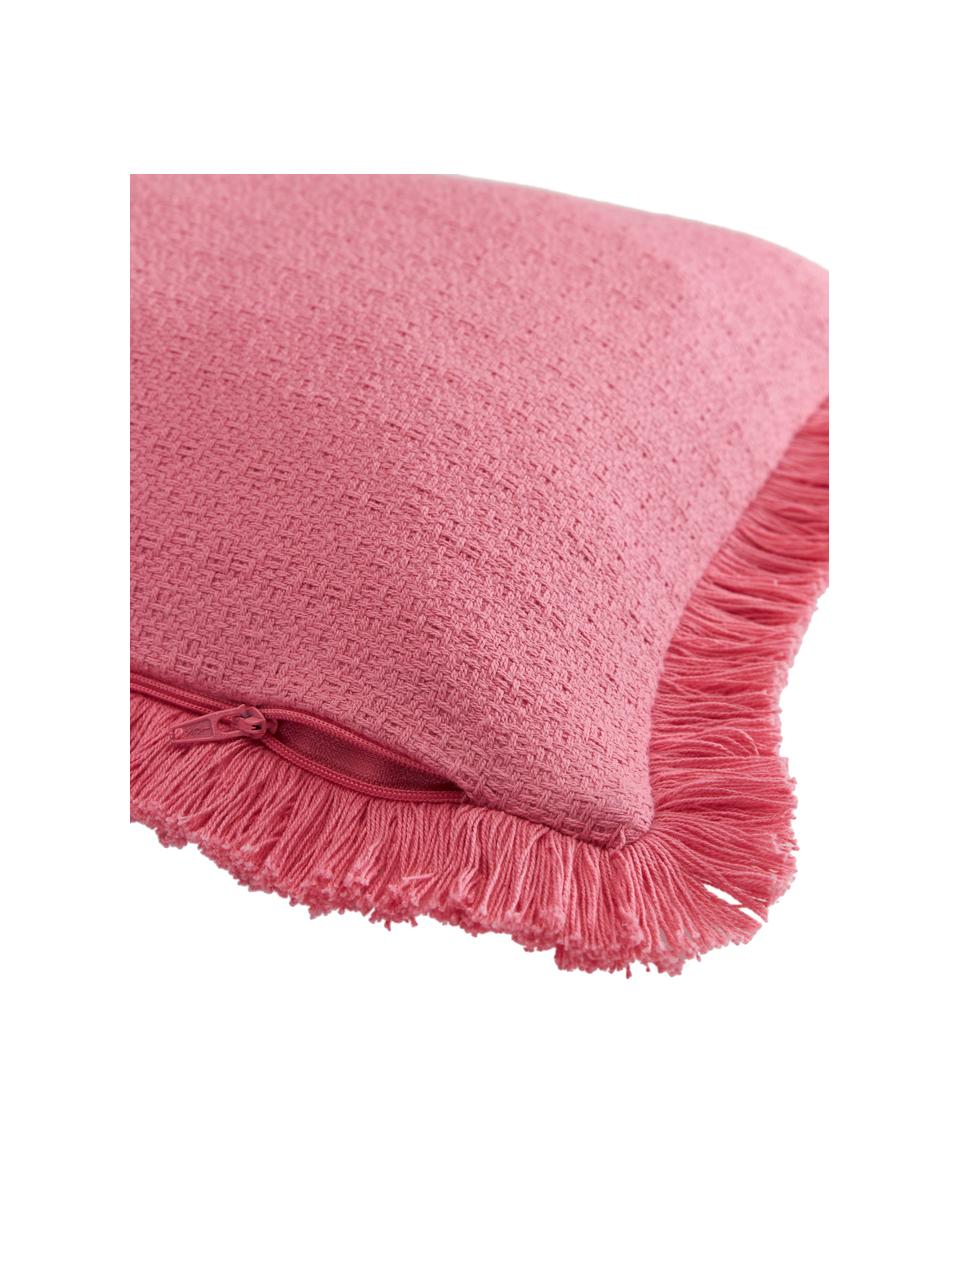 Federa arredo in cotone rosa con frange decorative Lorel, 100% cotone, Rosa, Larg. 30 x Lung. 50 cm